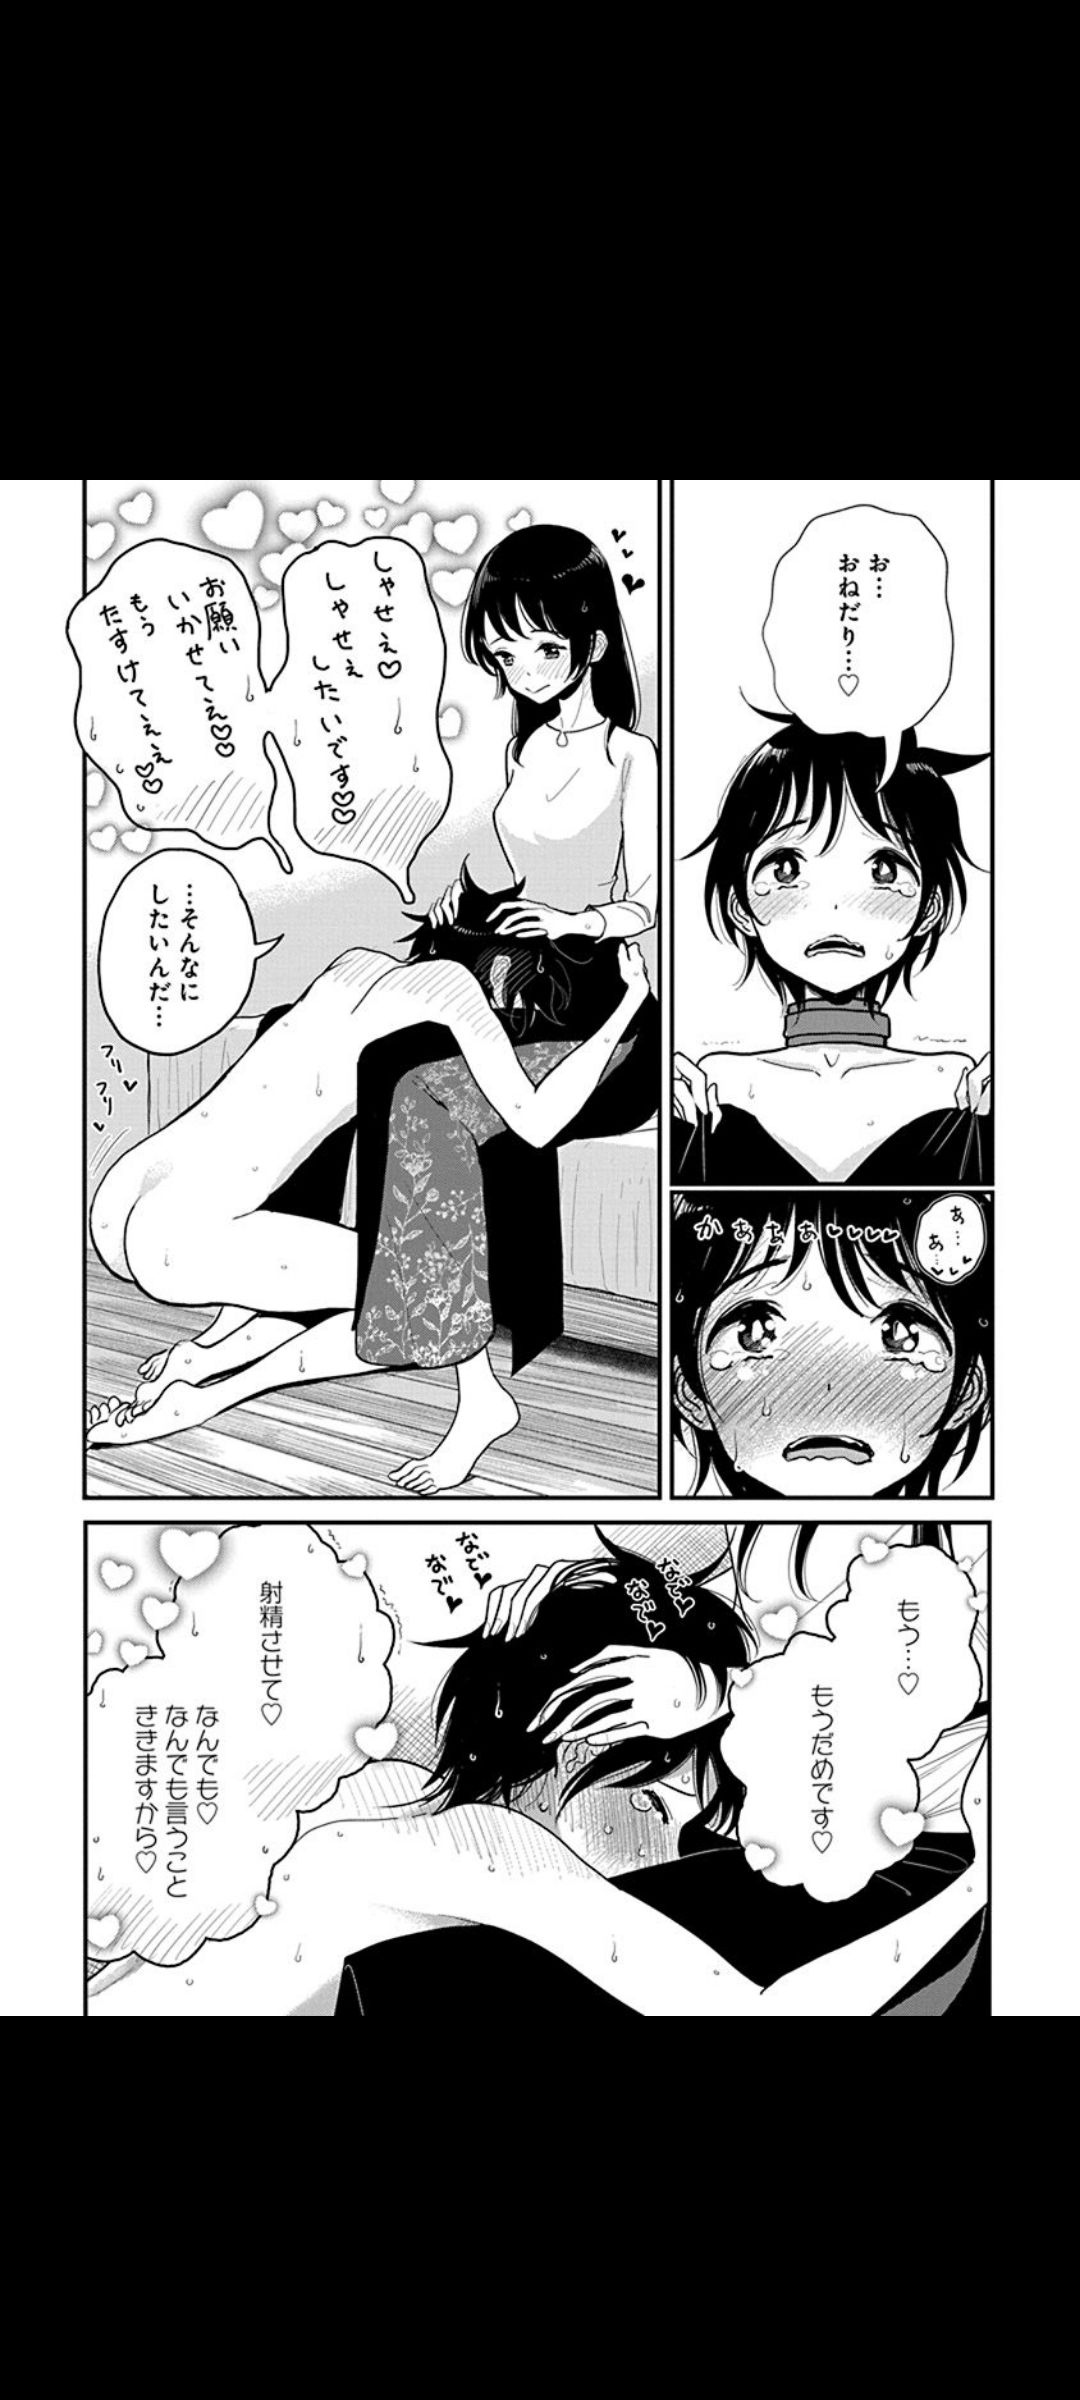 【Image】General manga with terrible erotic scenes Part 33 12